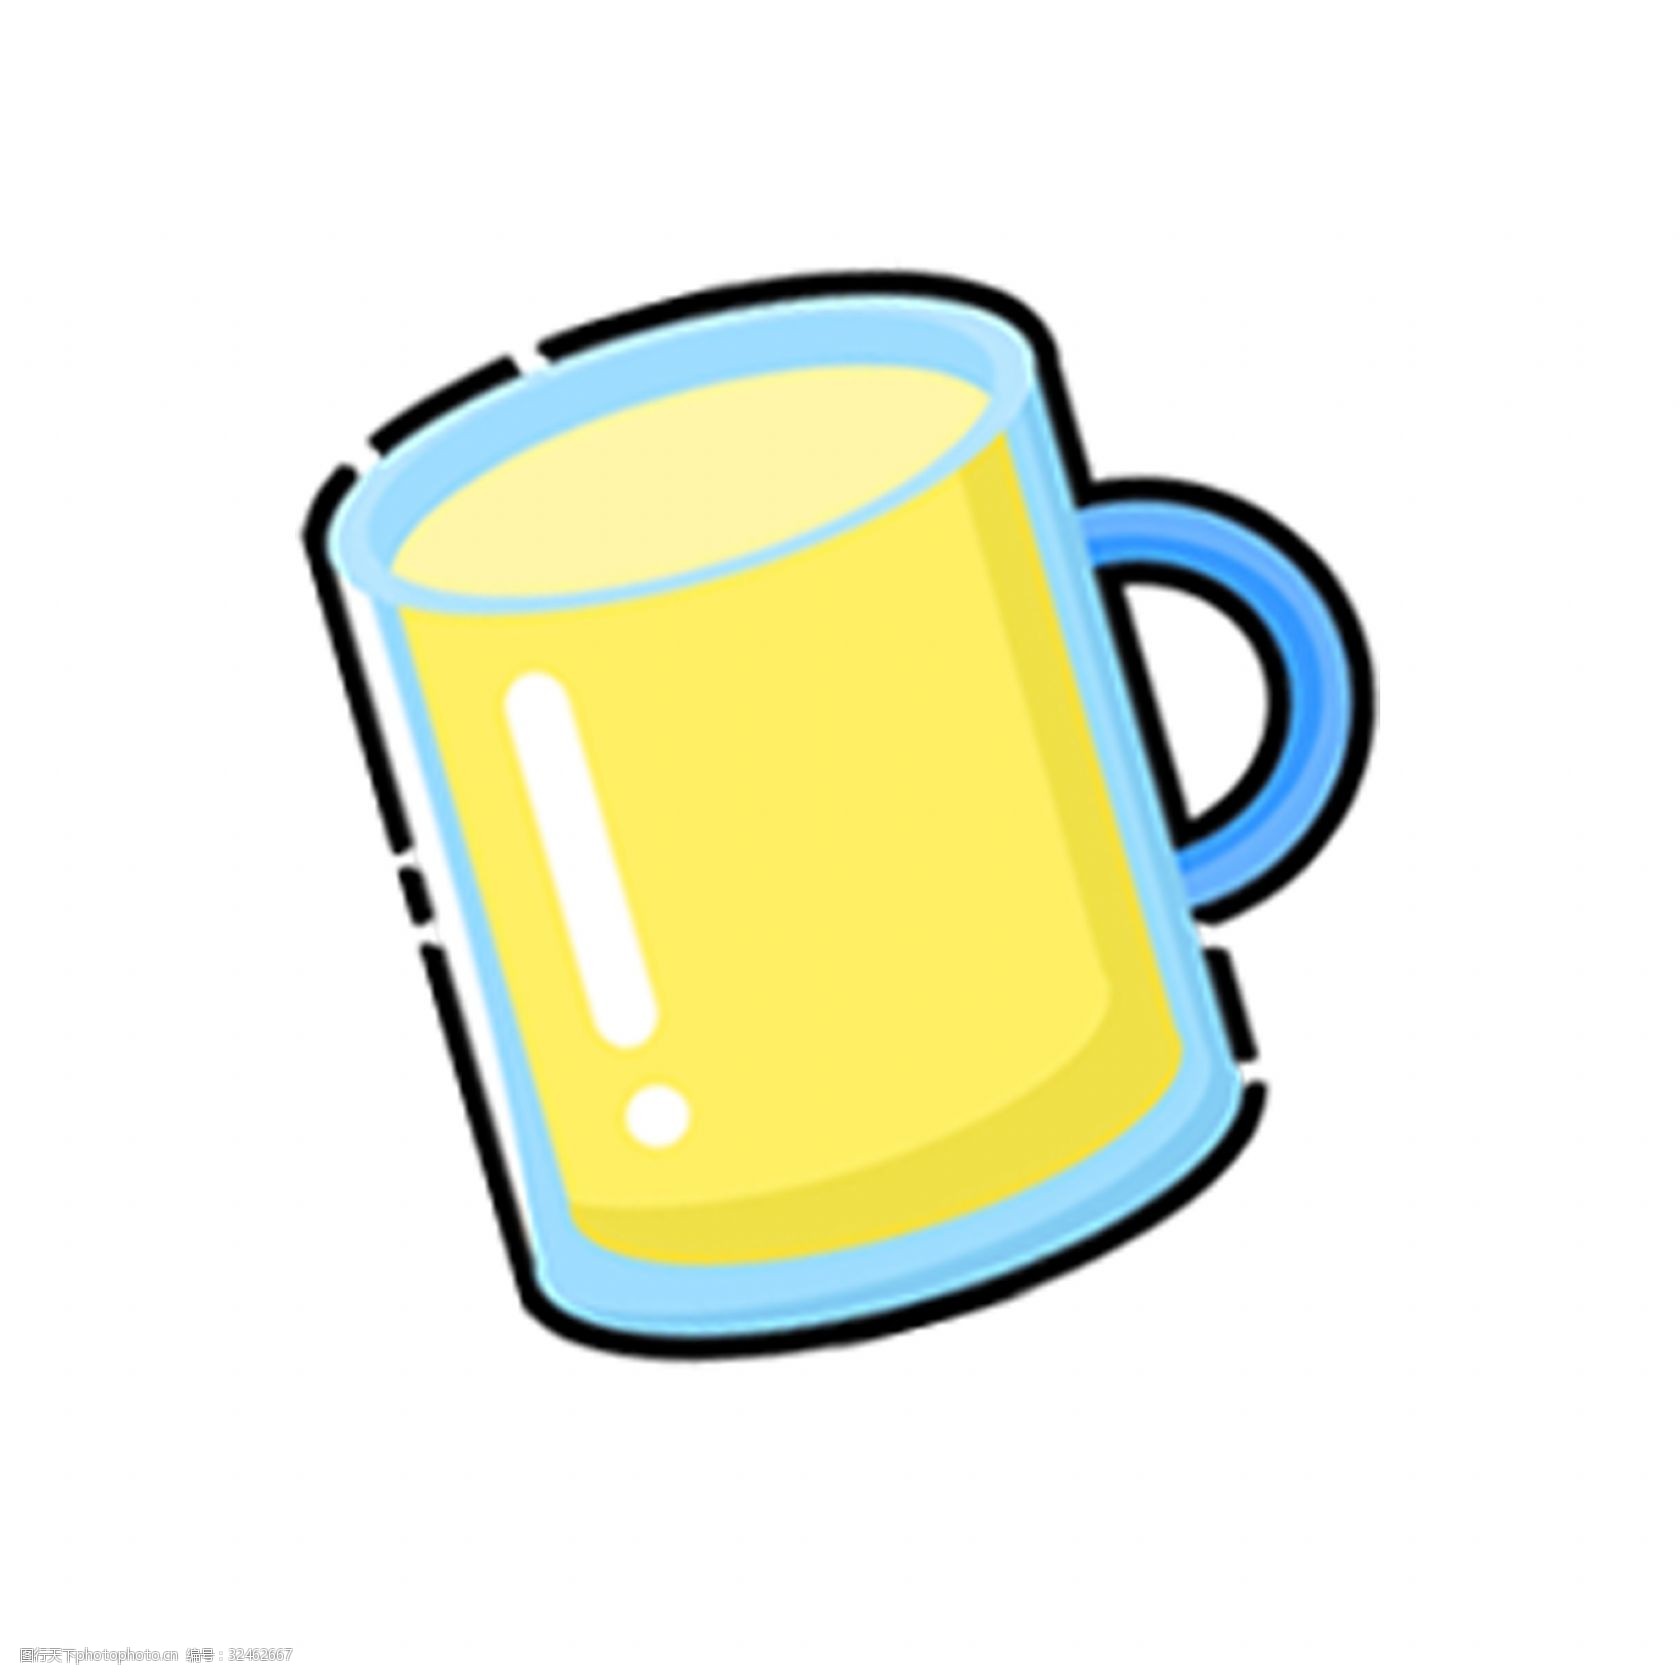 关键词:扁平化杯子黄色饮料 扁平化 黄色 杯子 饮料 饮品 卡通手绘